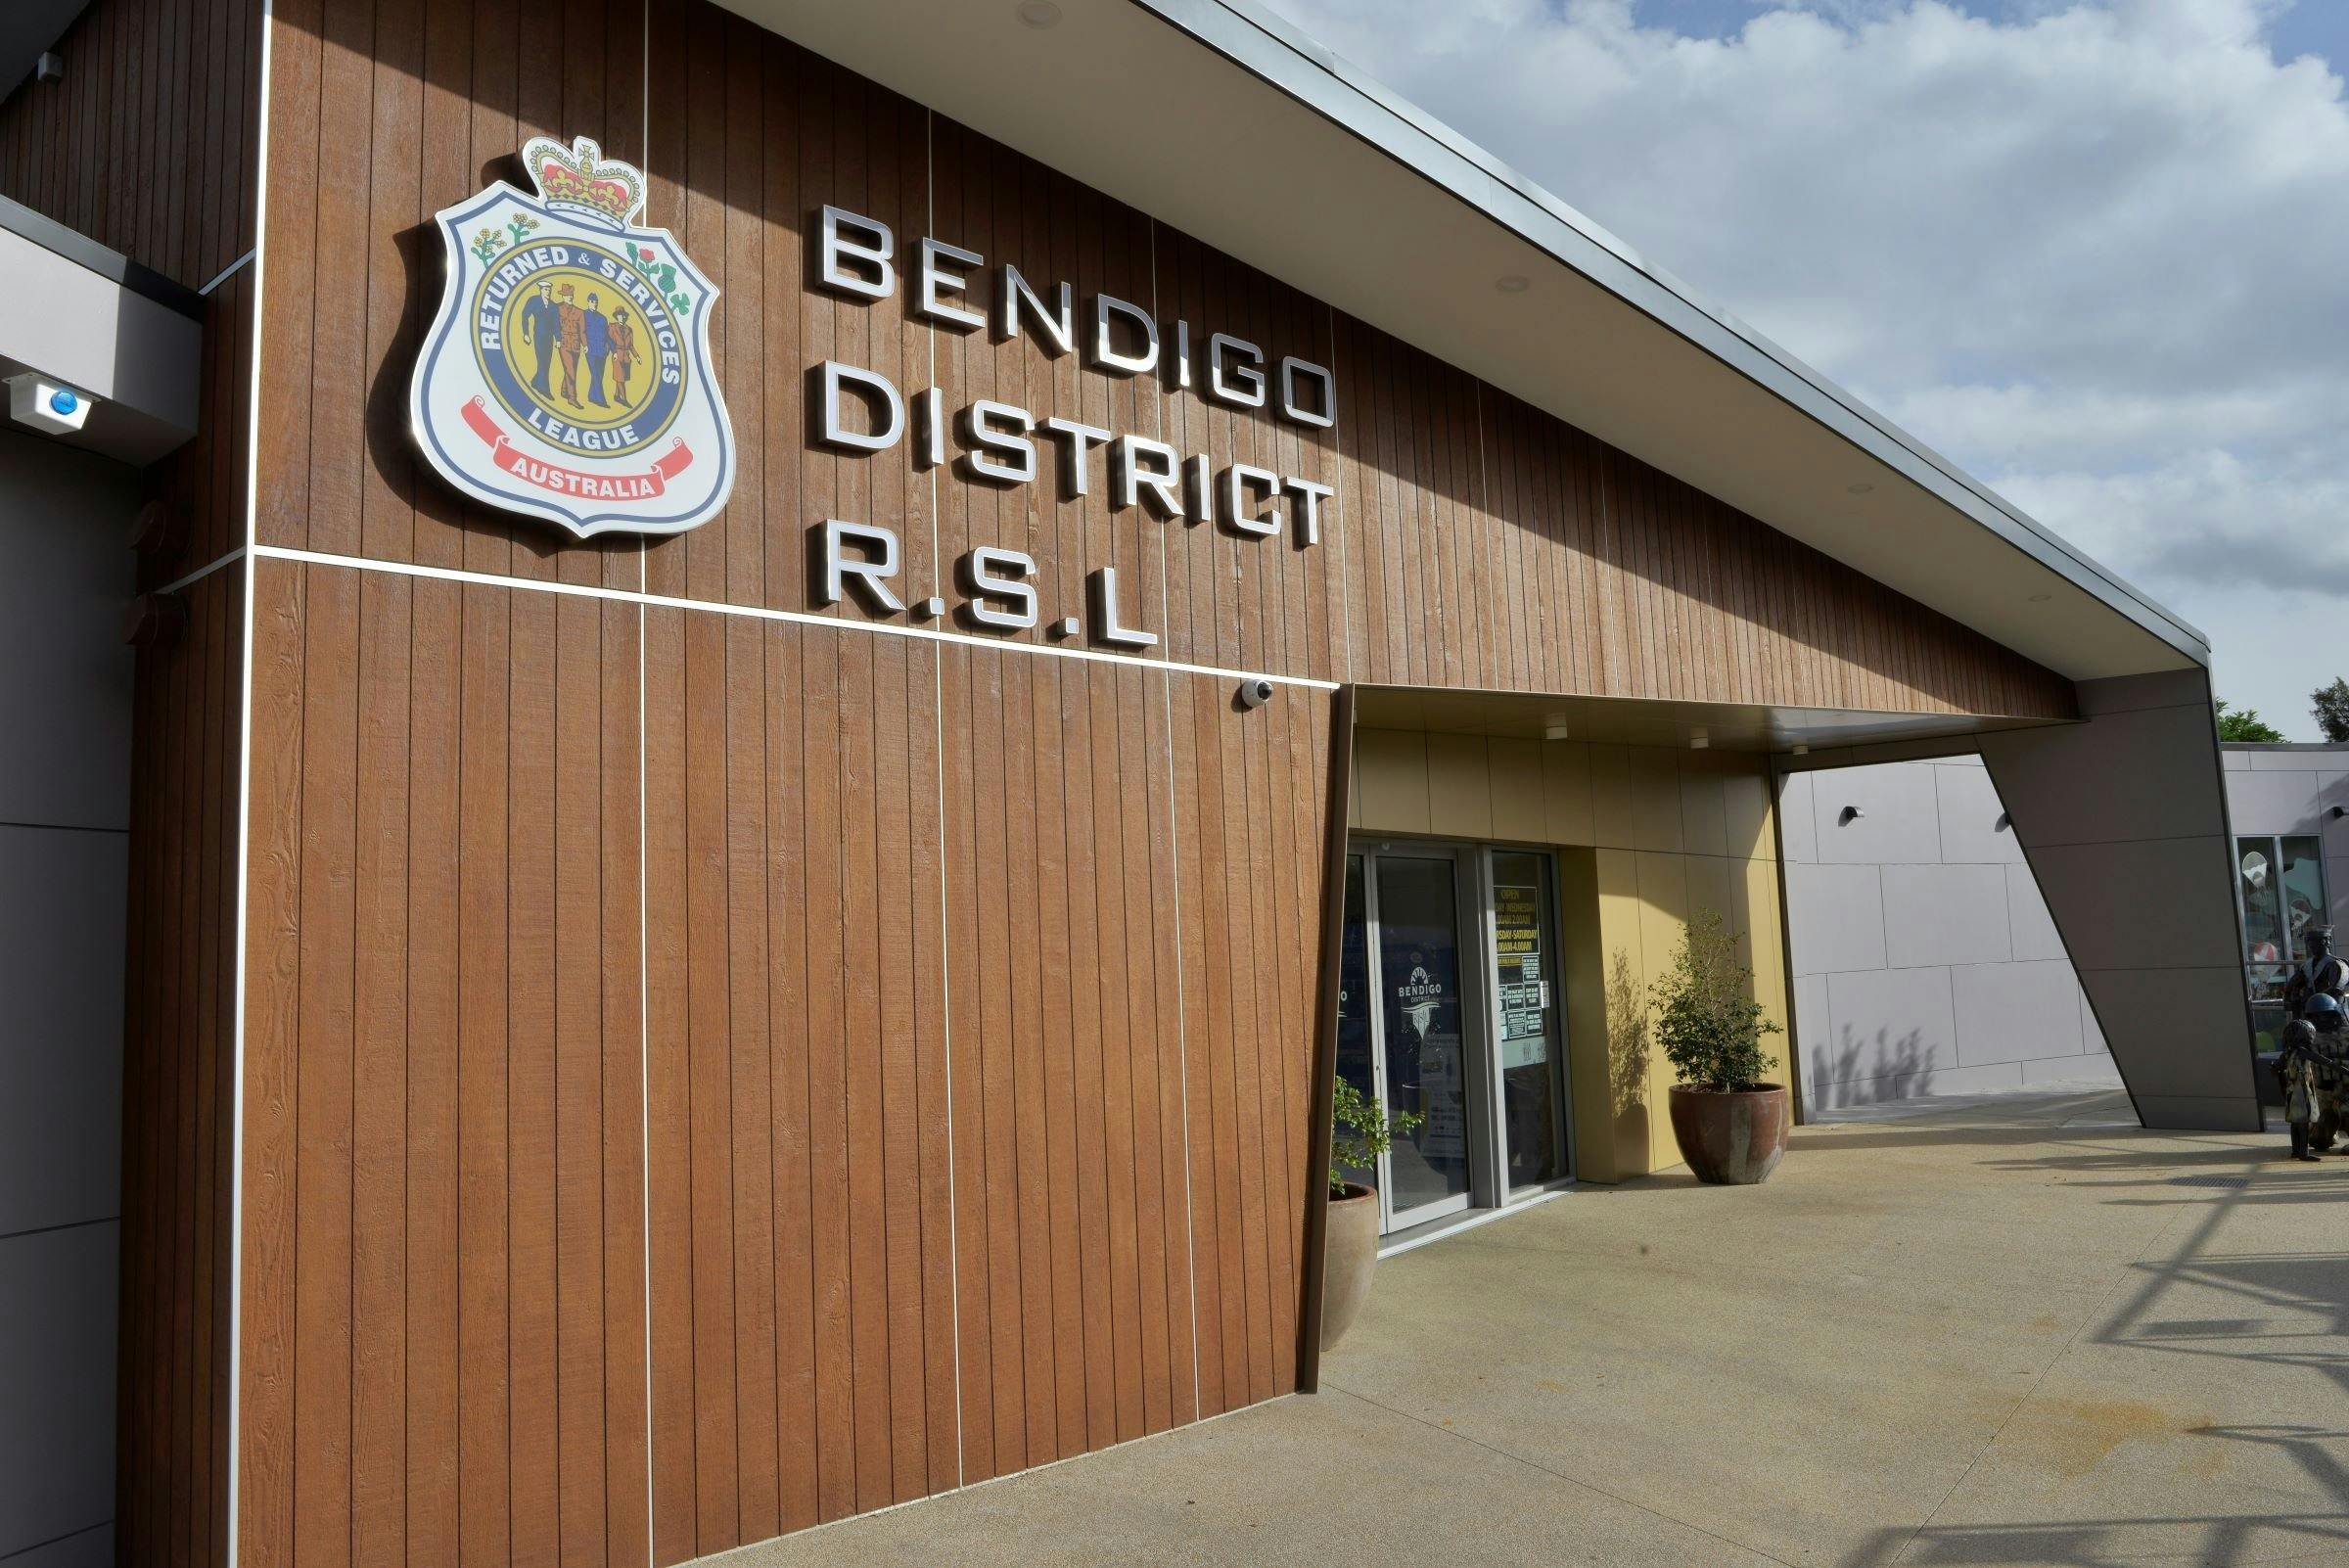 Bendigo District RSL